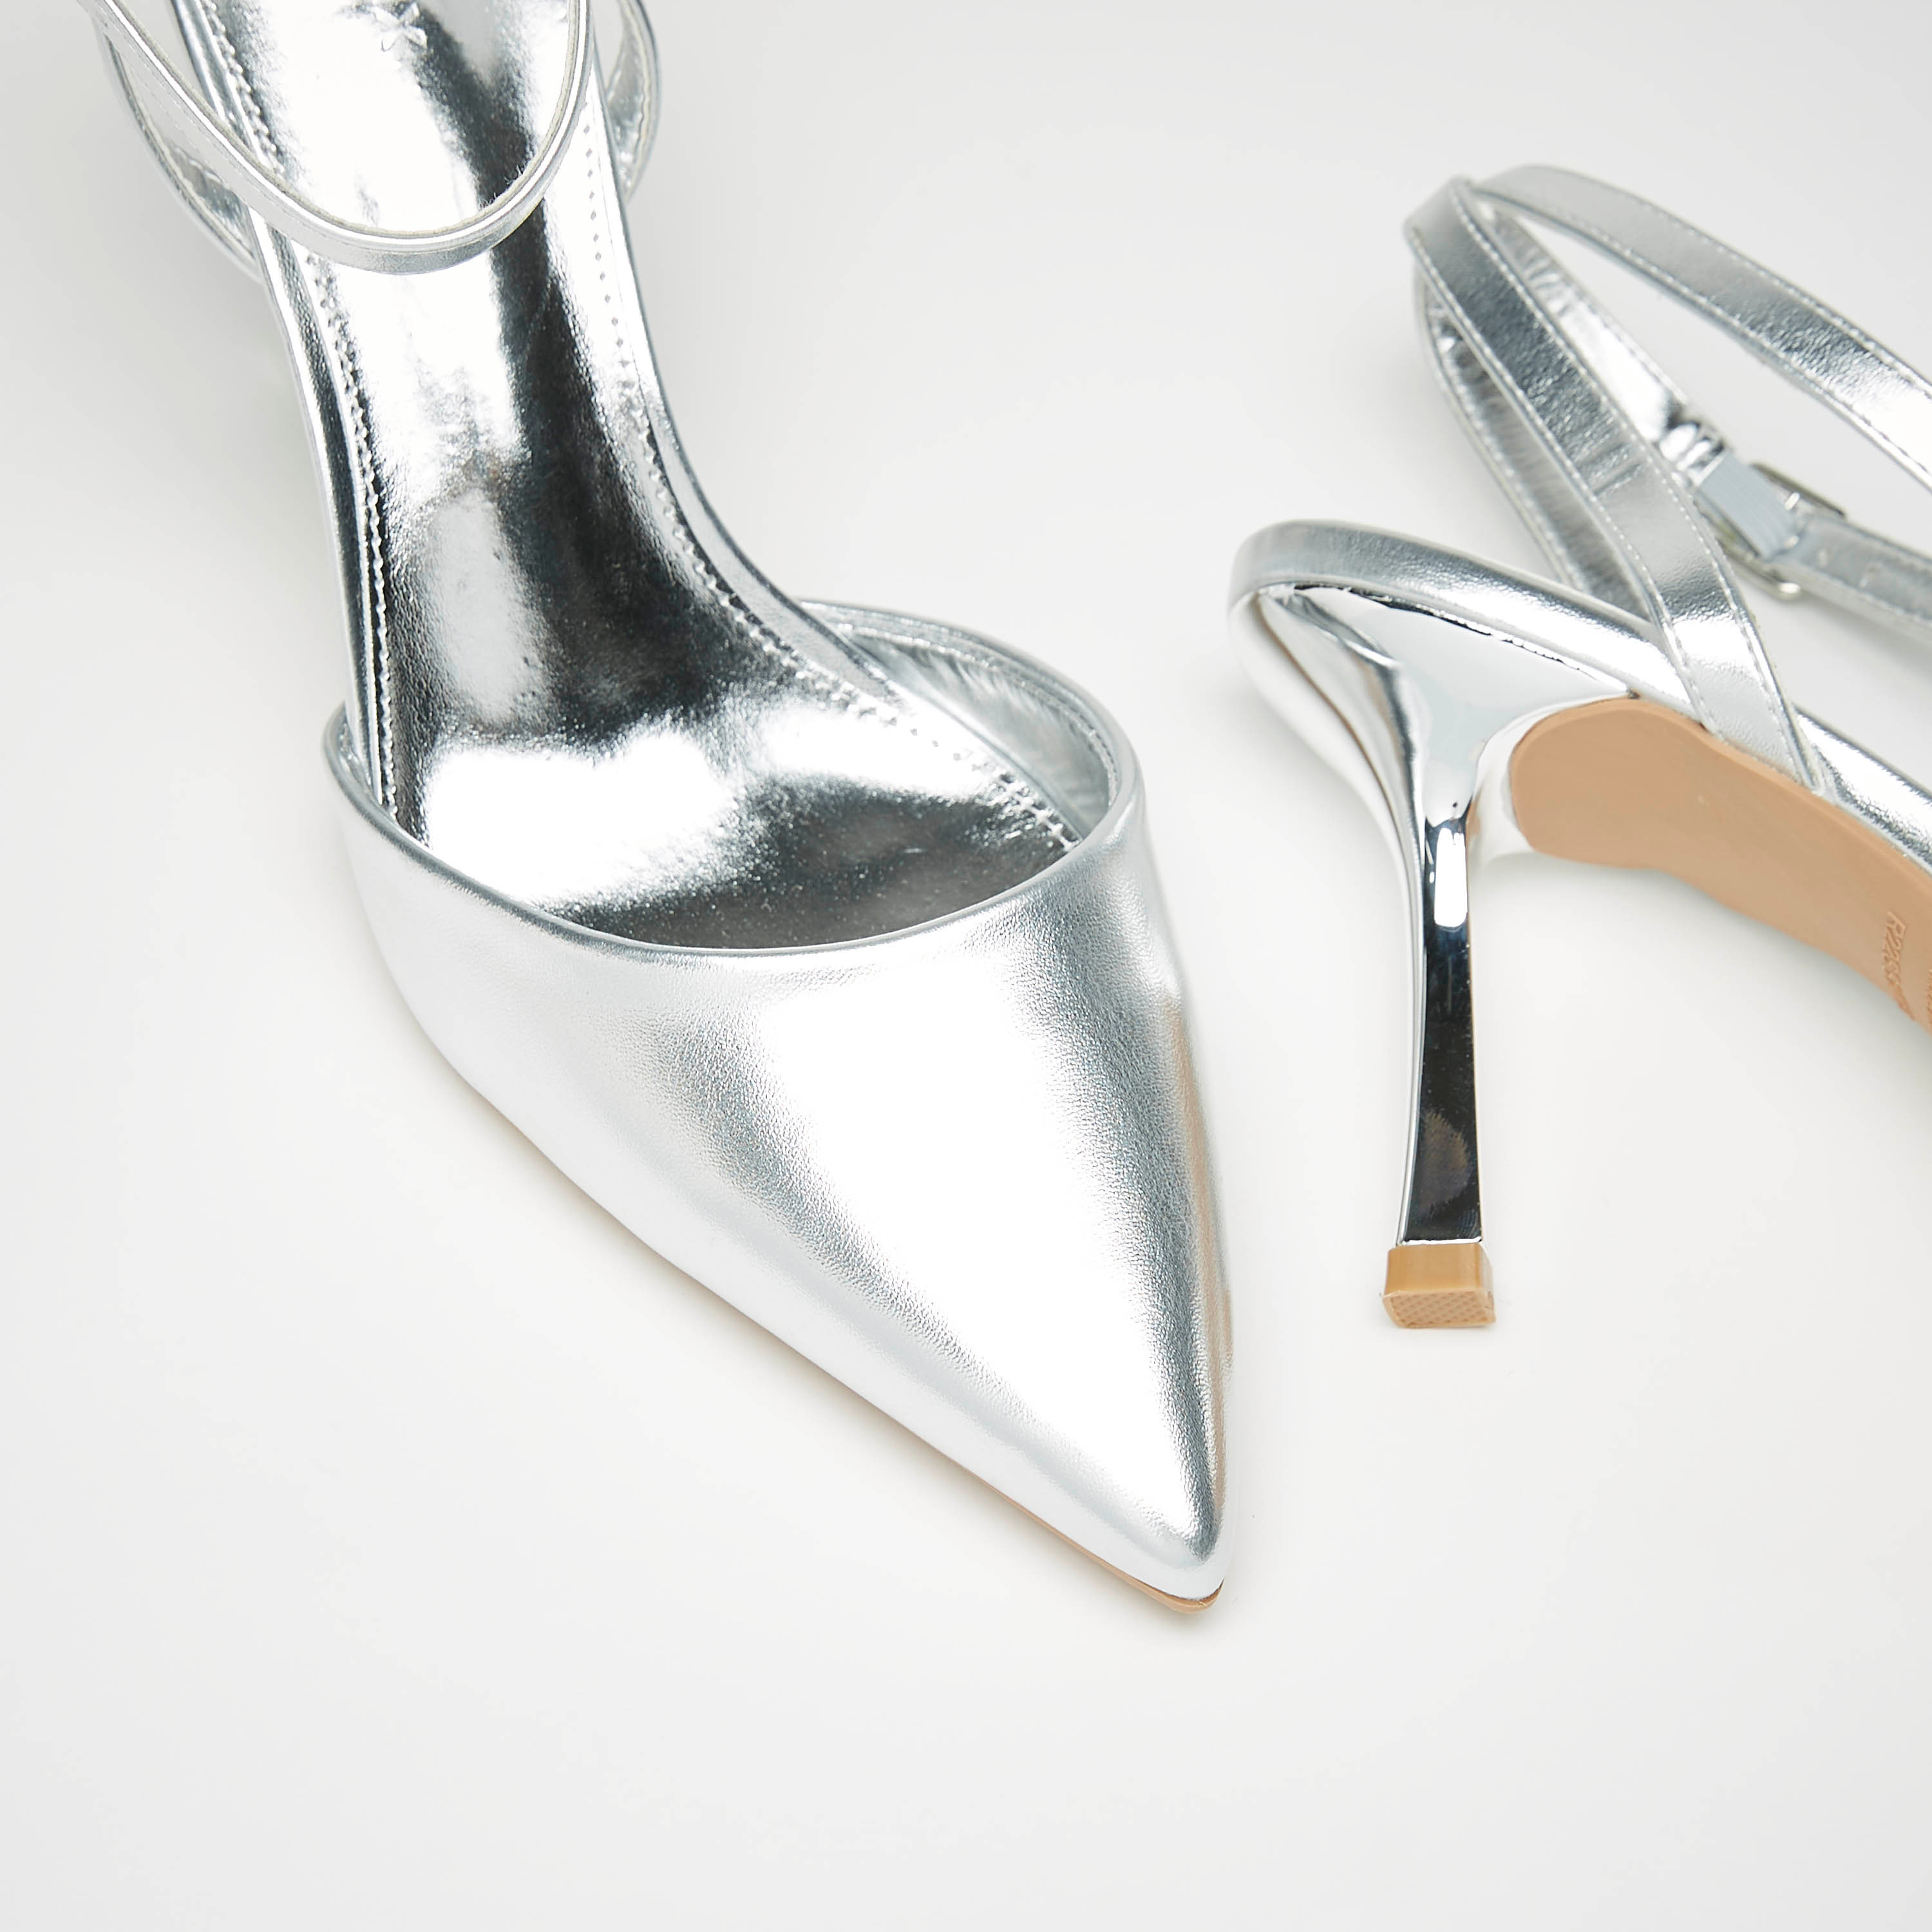 Buy Women's Strappy Heels Online | Famous Footwear Australia